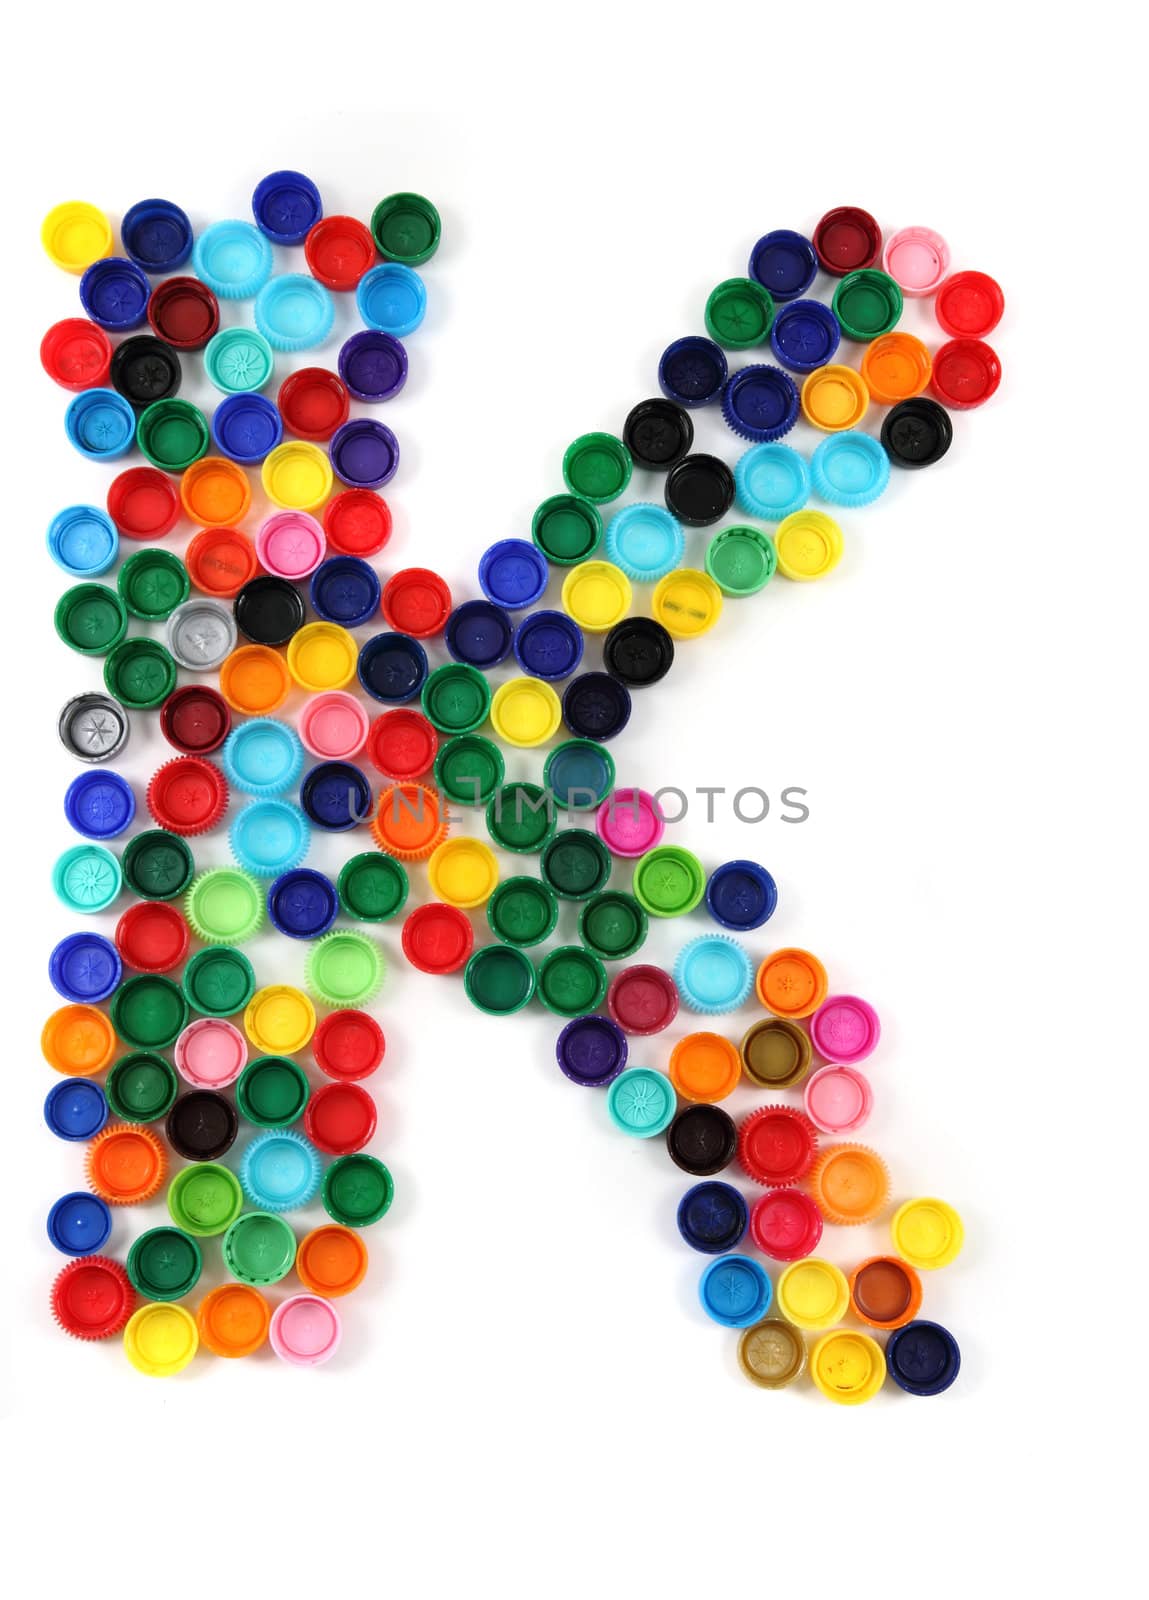 K letter from plastic alphabet by jonnysek